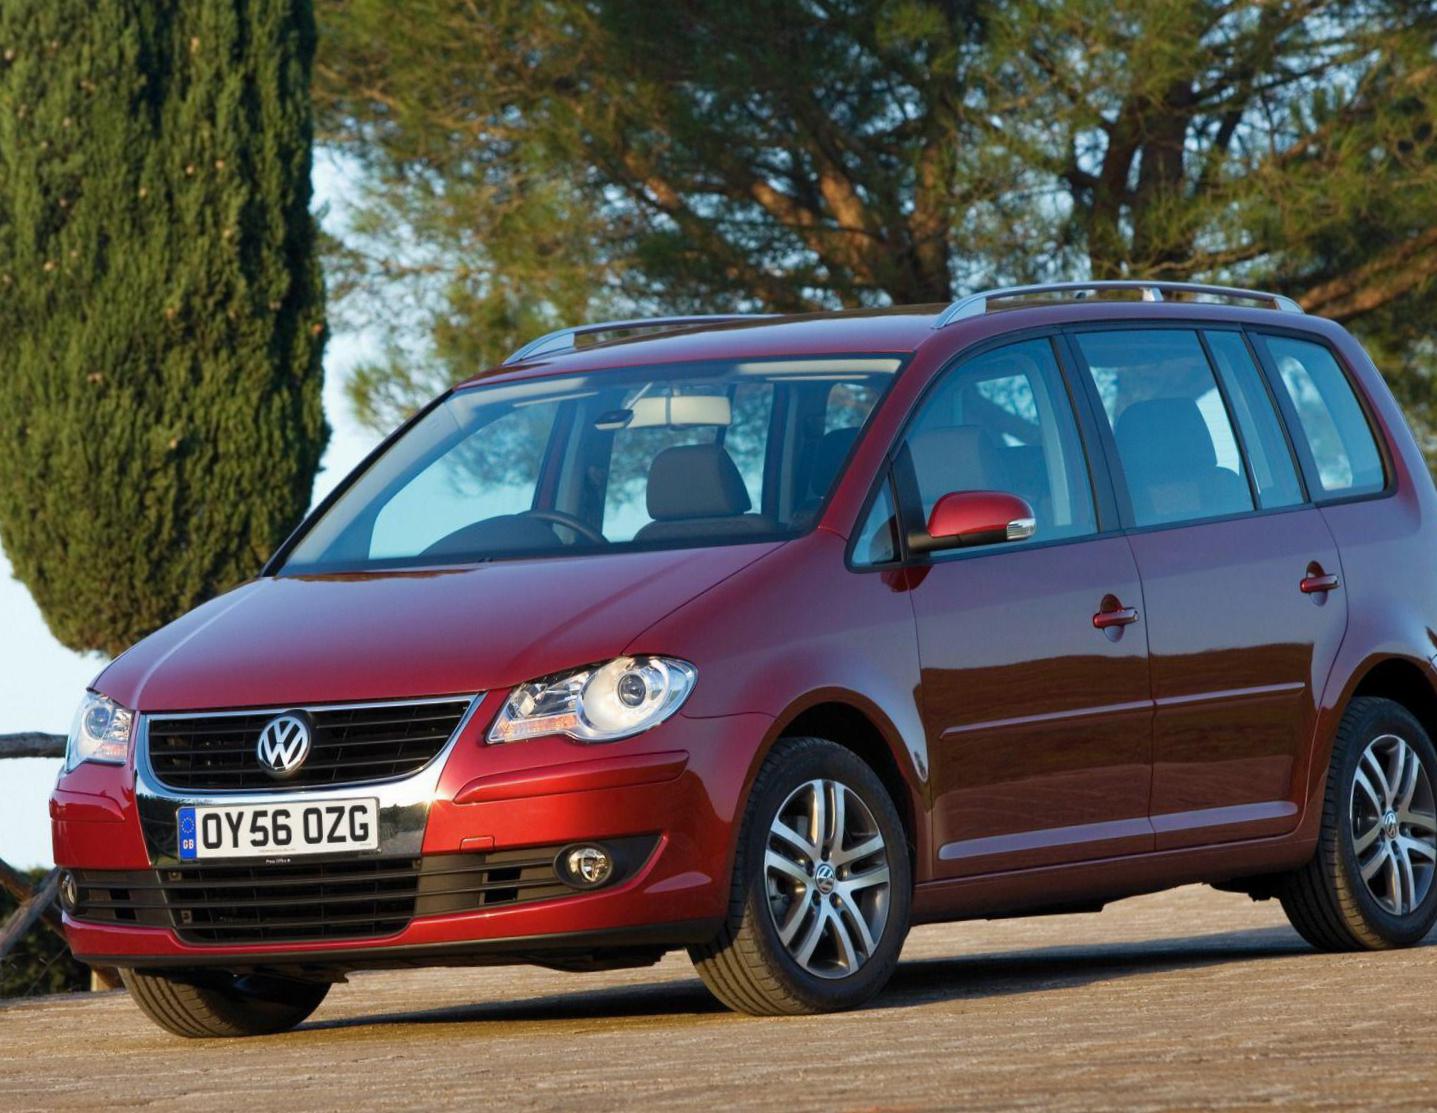 Volkswagen Touran Specifications 2013